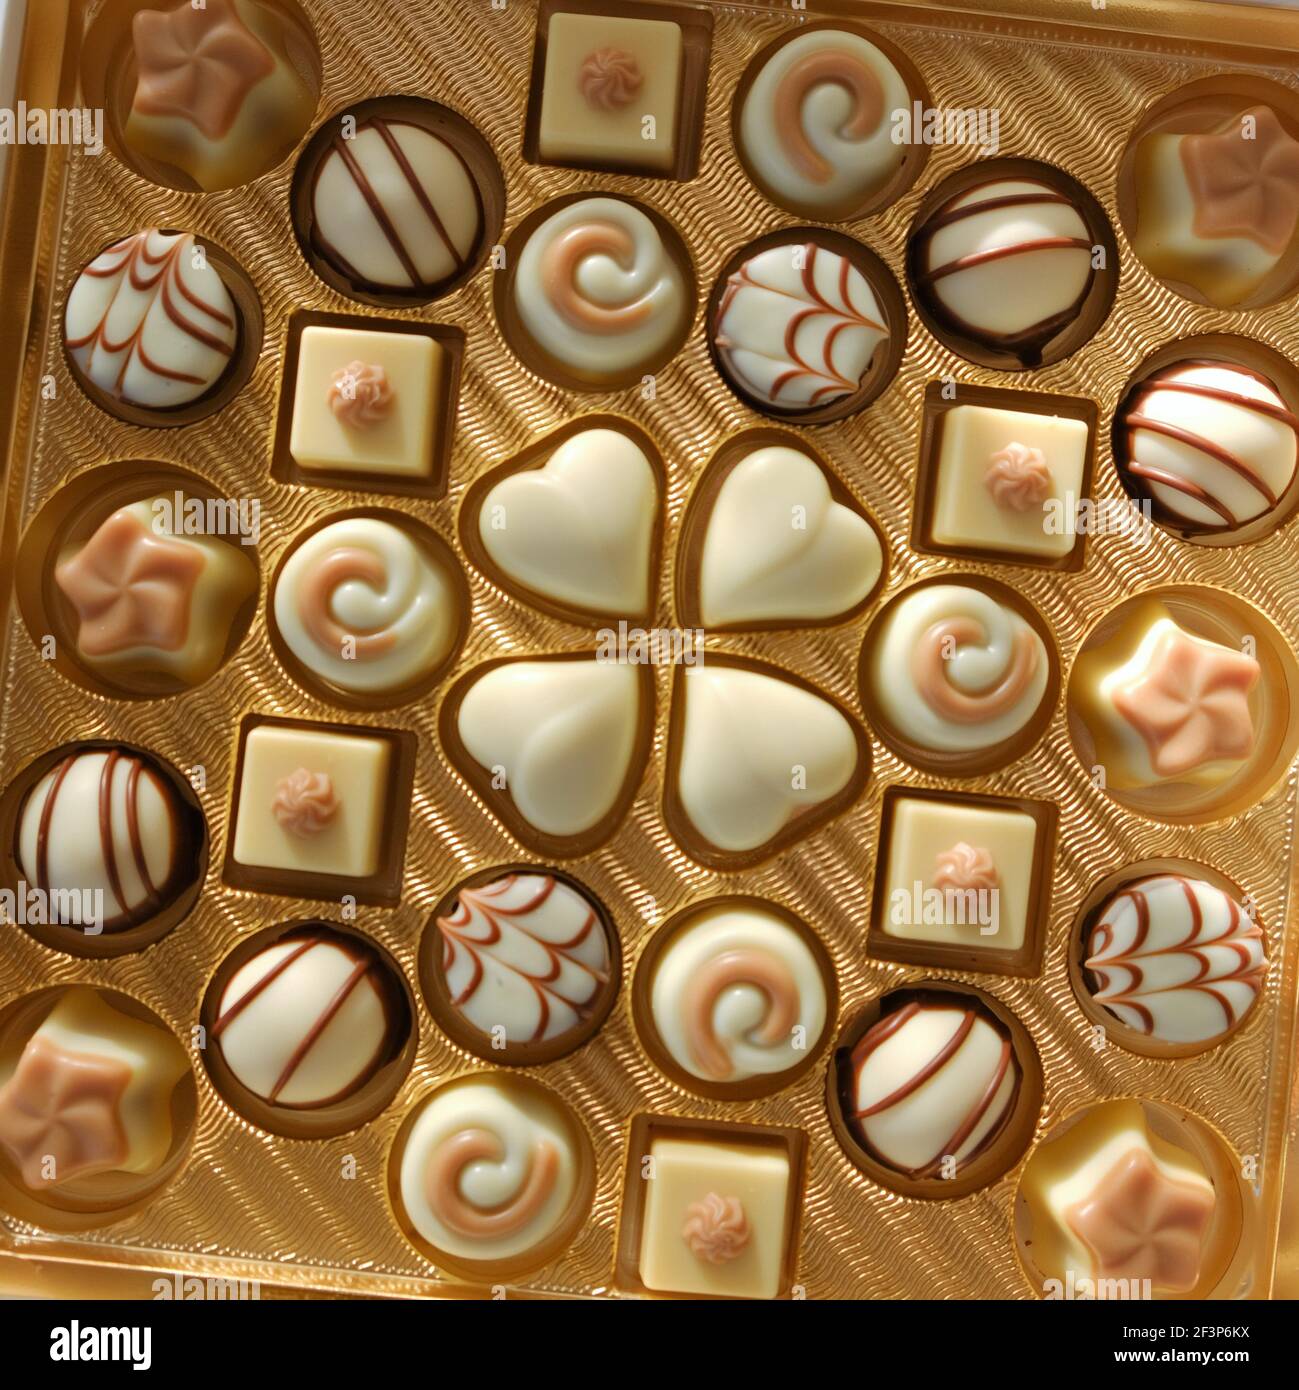 Schokolade Süßigkeiten .Weiße Schokolade. Verschiedene Schokoladentrüffeln in einer Goldschachtel Nahaufnahme. Süßigkeiten und Desserts concept.chocolate Süßigkeiten.Schokolade Bonbons Stockfoto